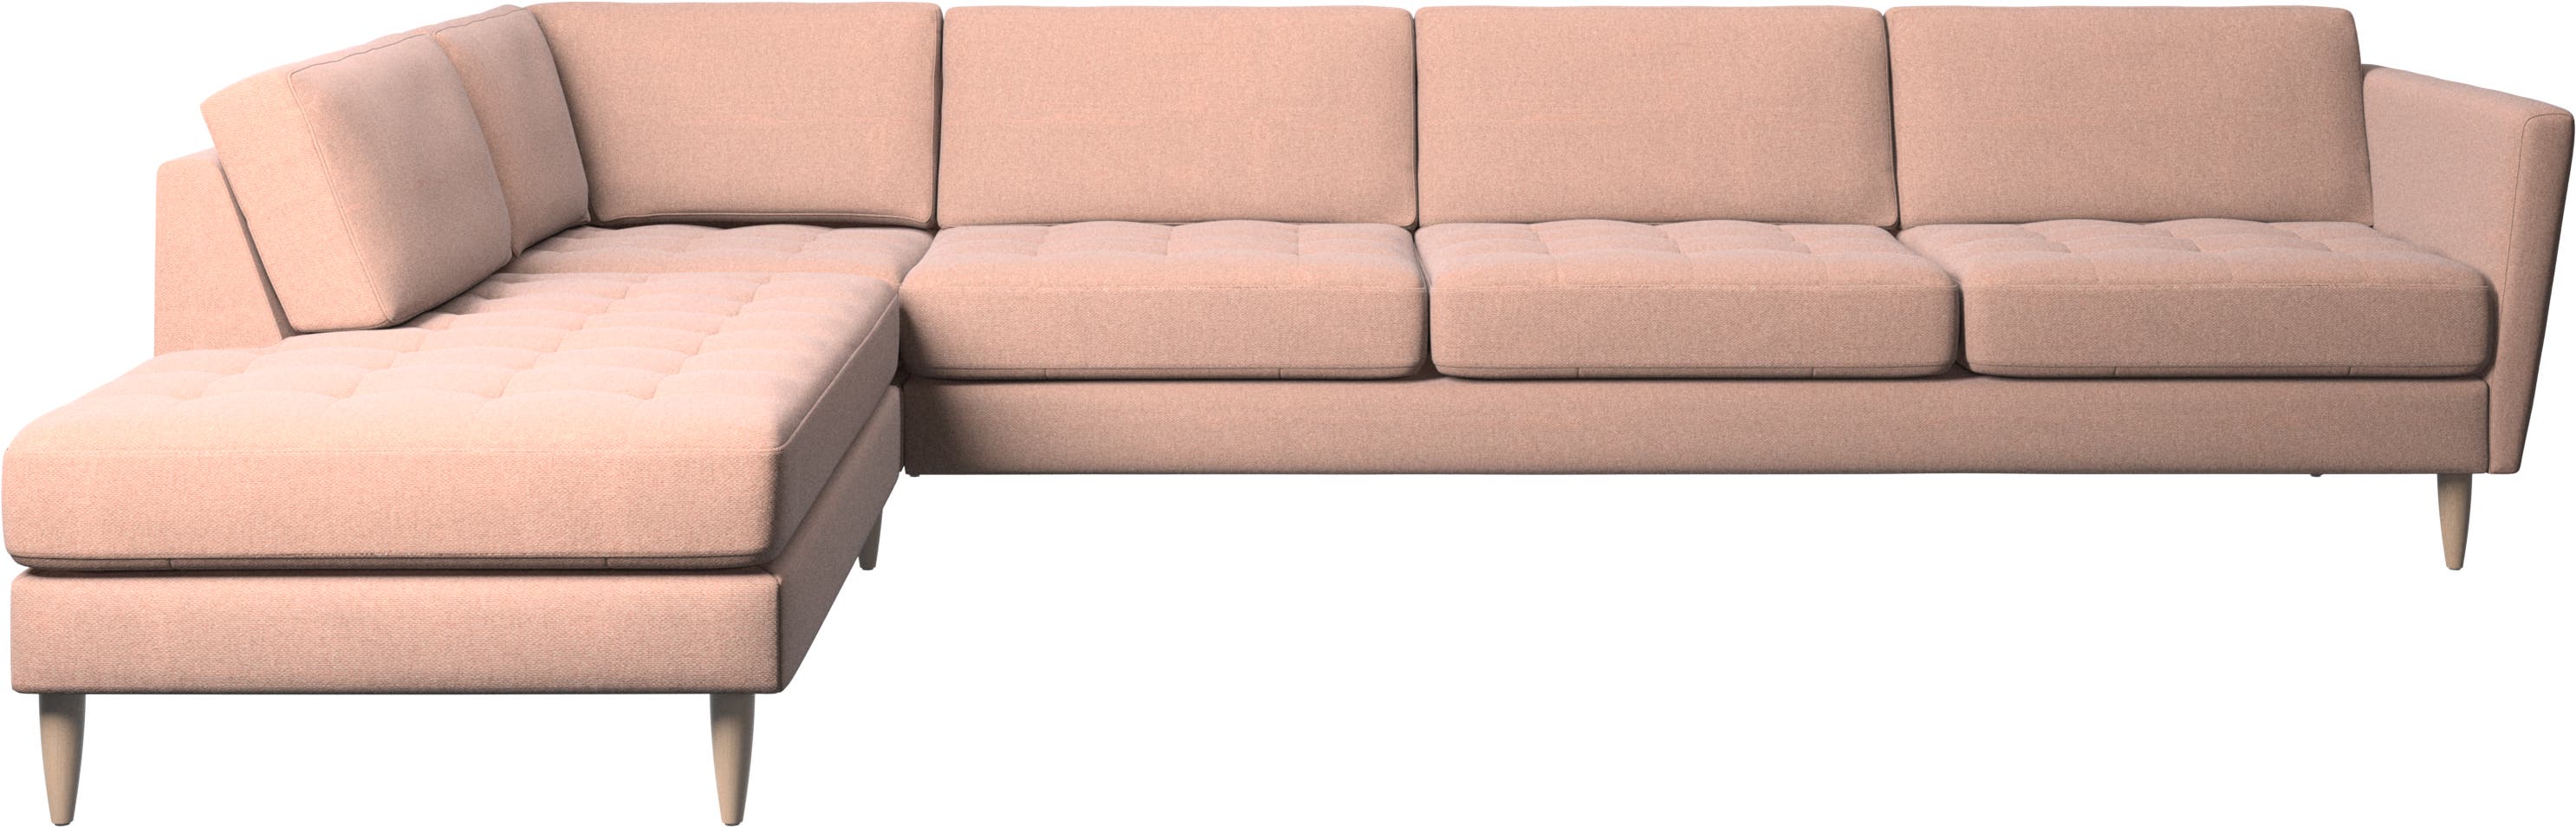 Osaka corner sofa with lounging unit, tufted seat